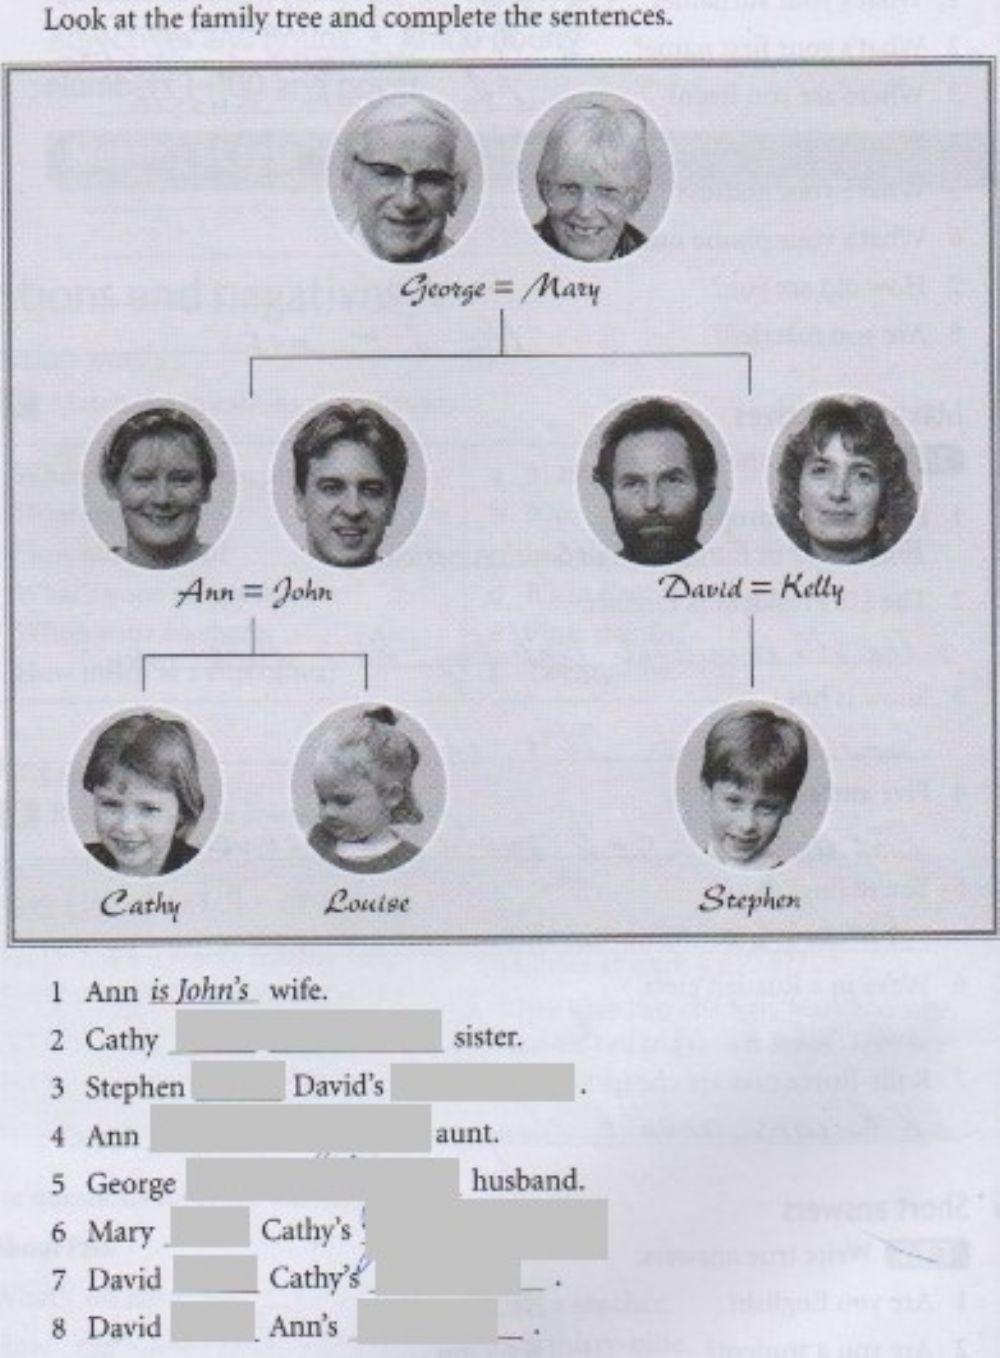 The family tree